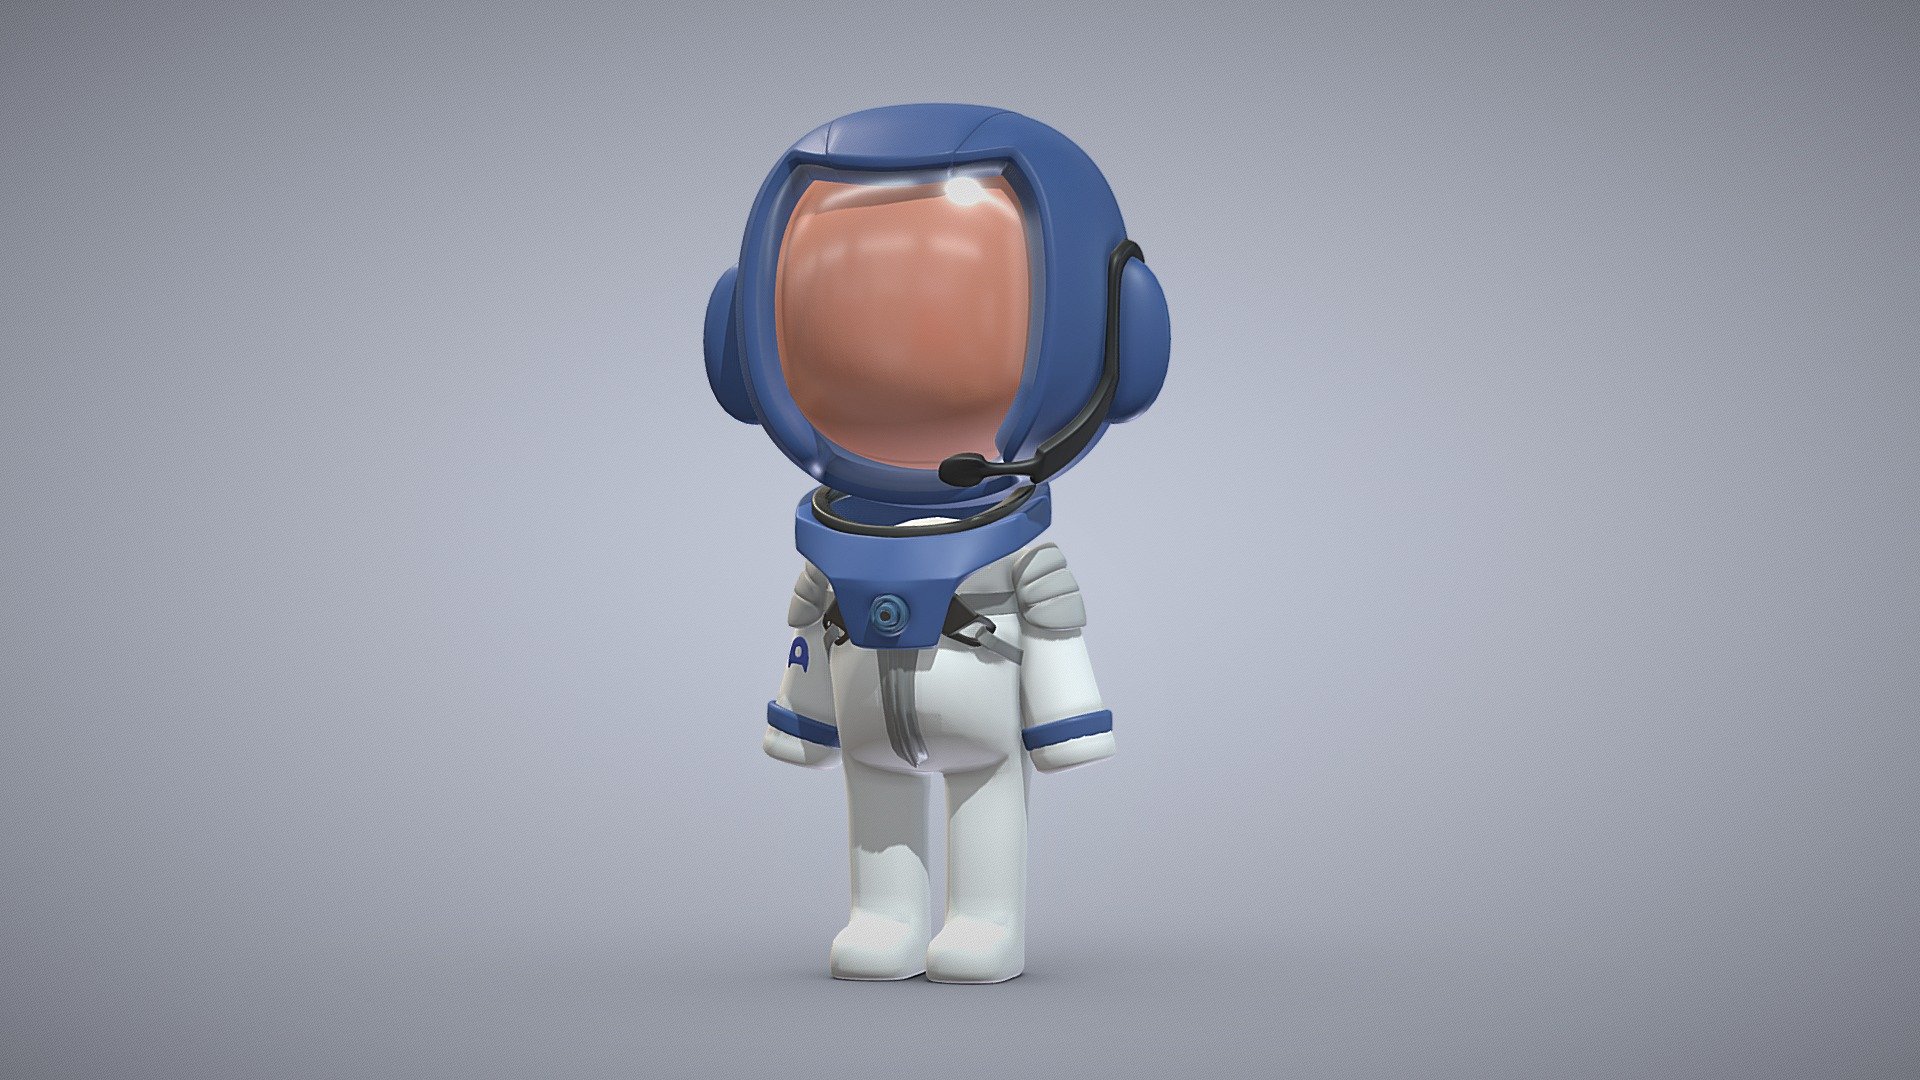 Astronaut - Astronaut - Buy Royalty Free 3D model by tkkjee 🪲 (@tkkjee) 3d model